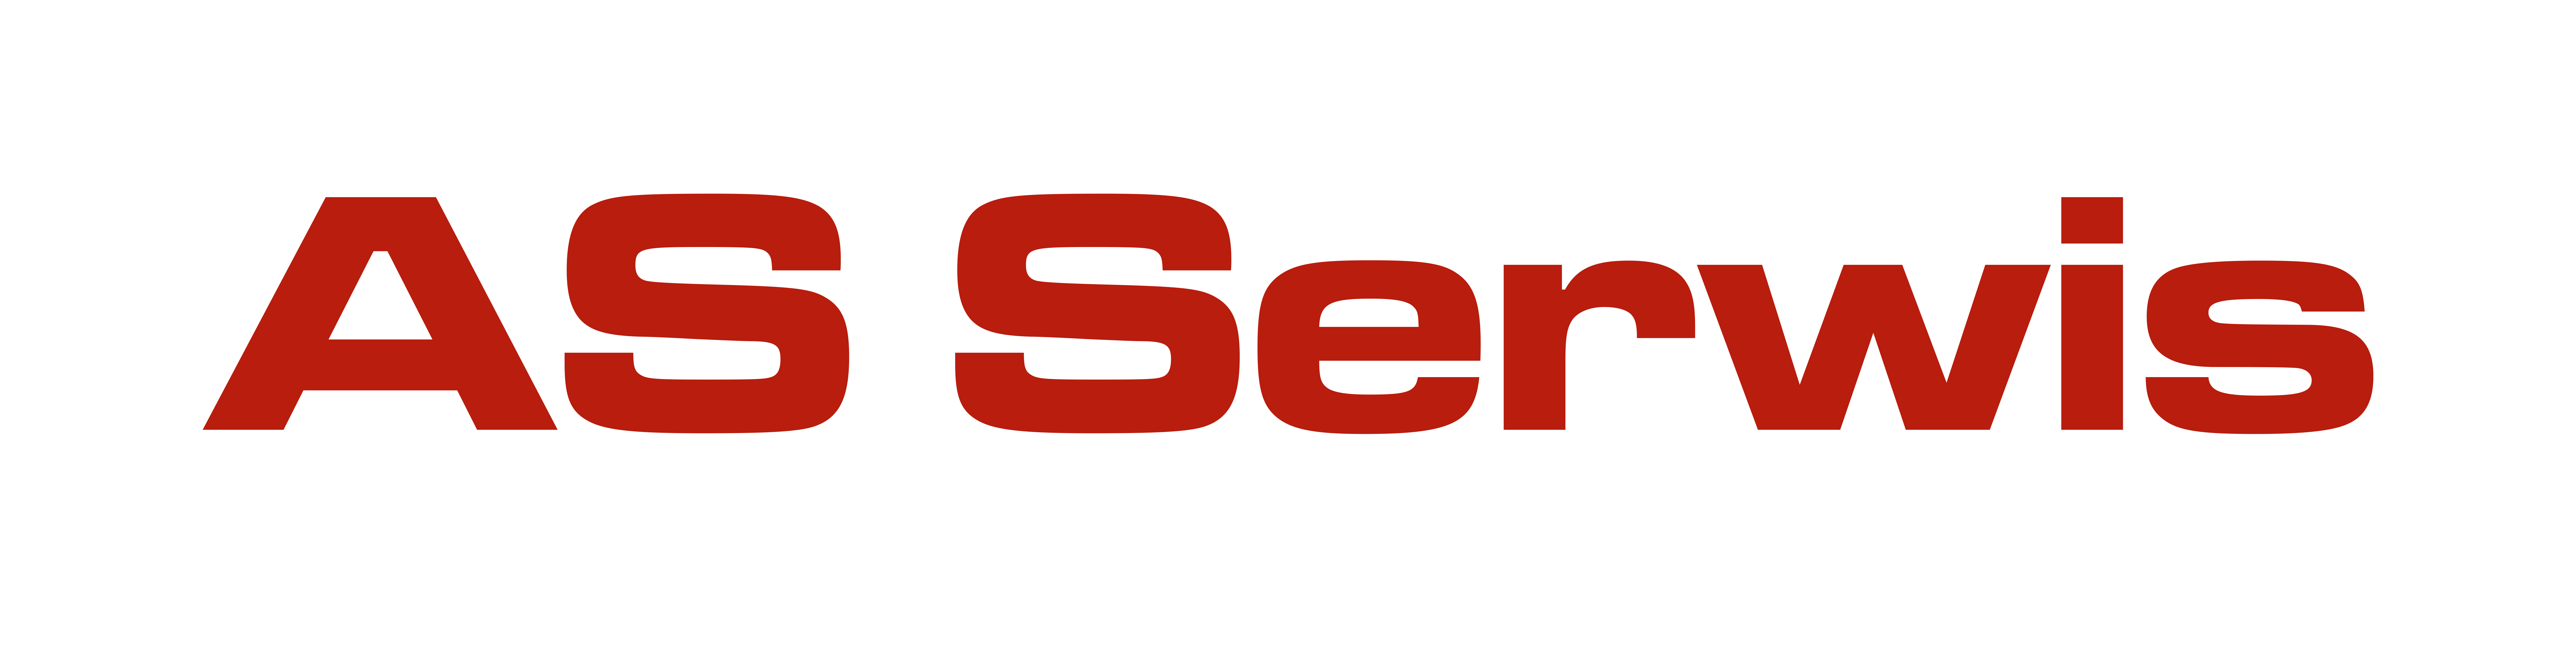 AS Serwis logo